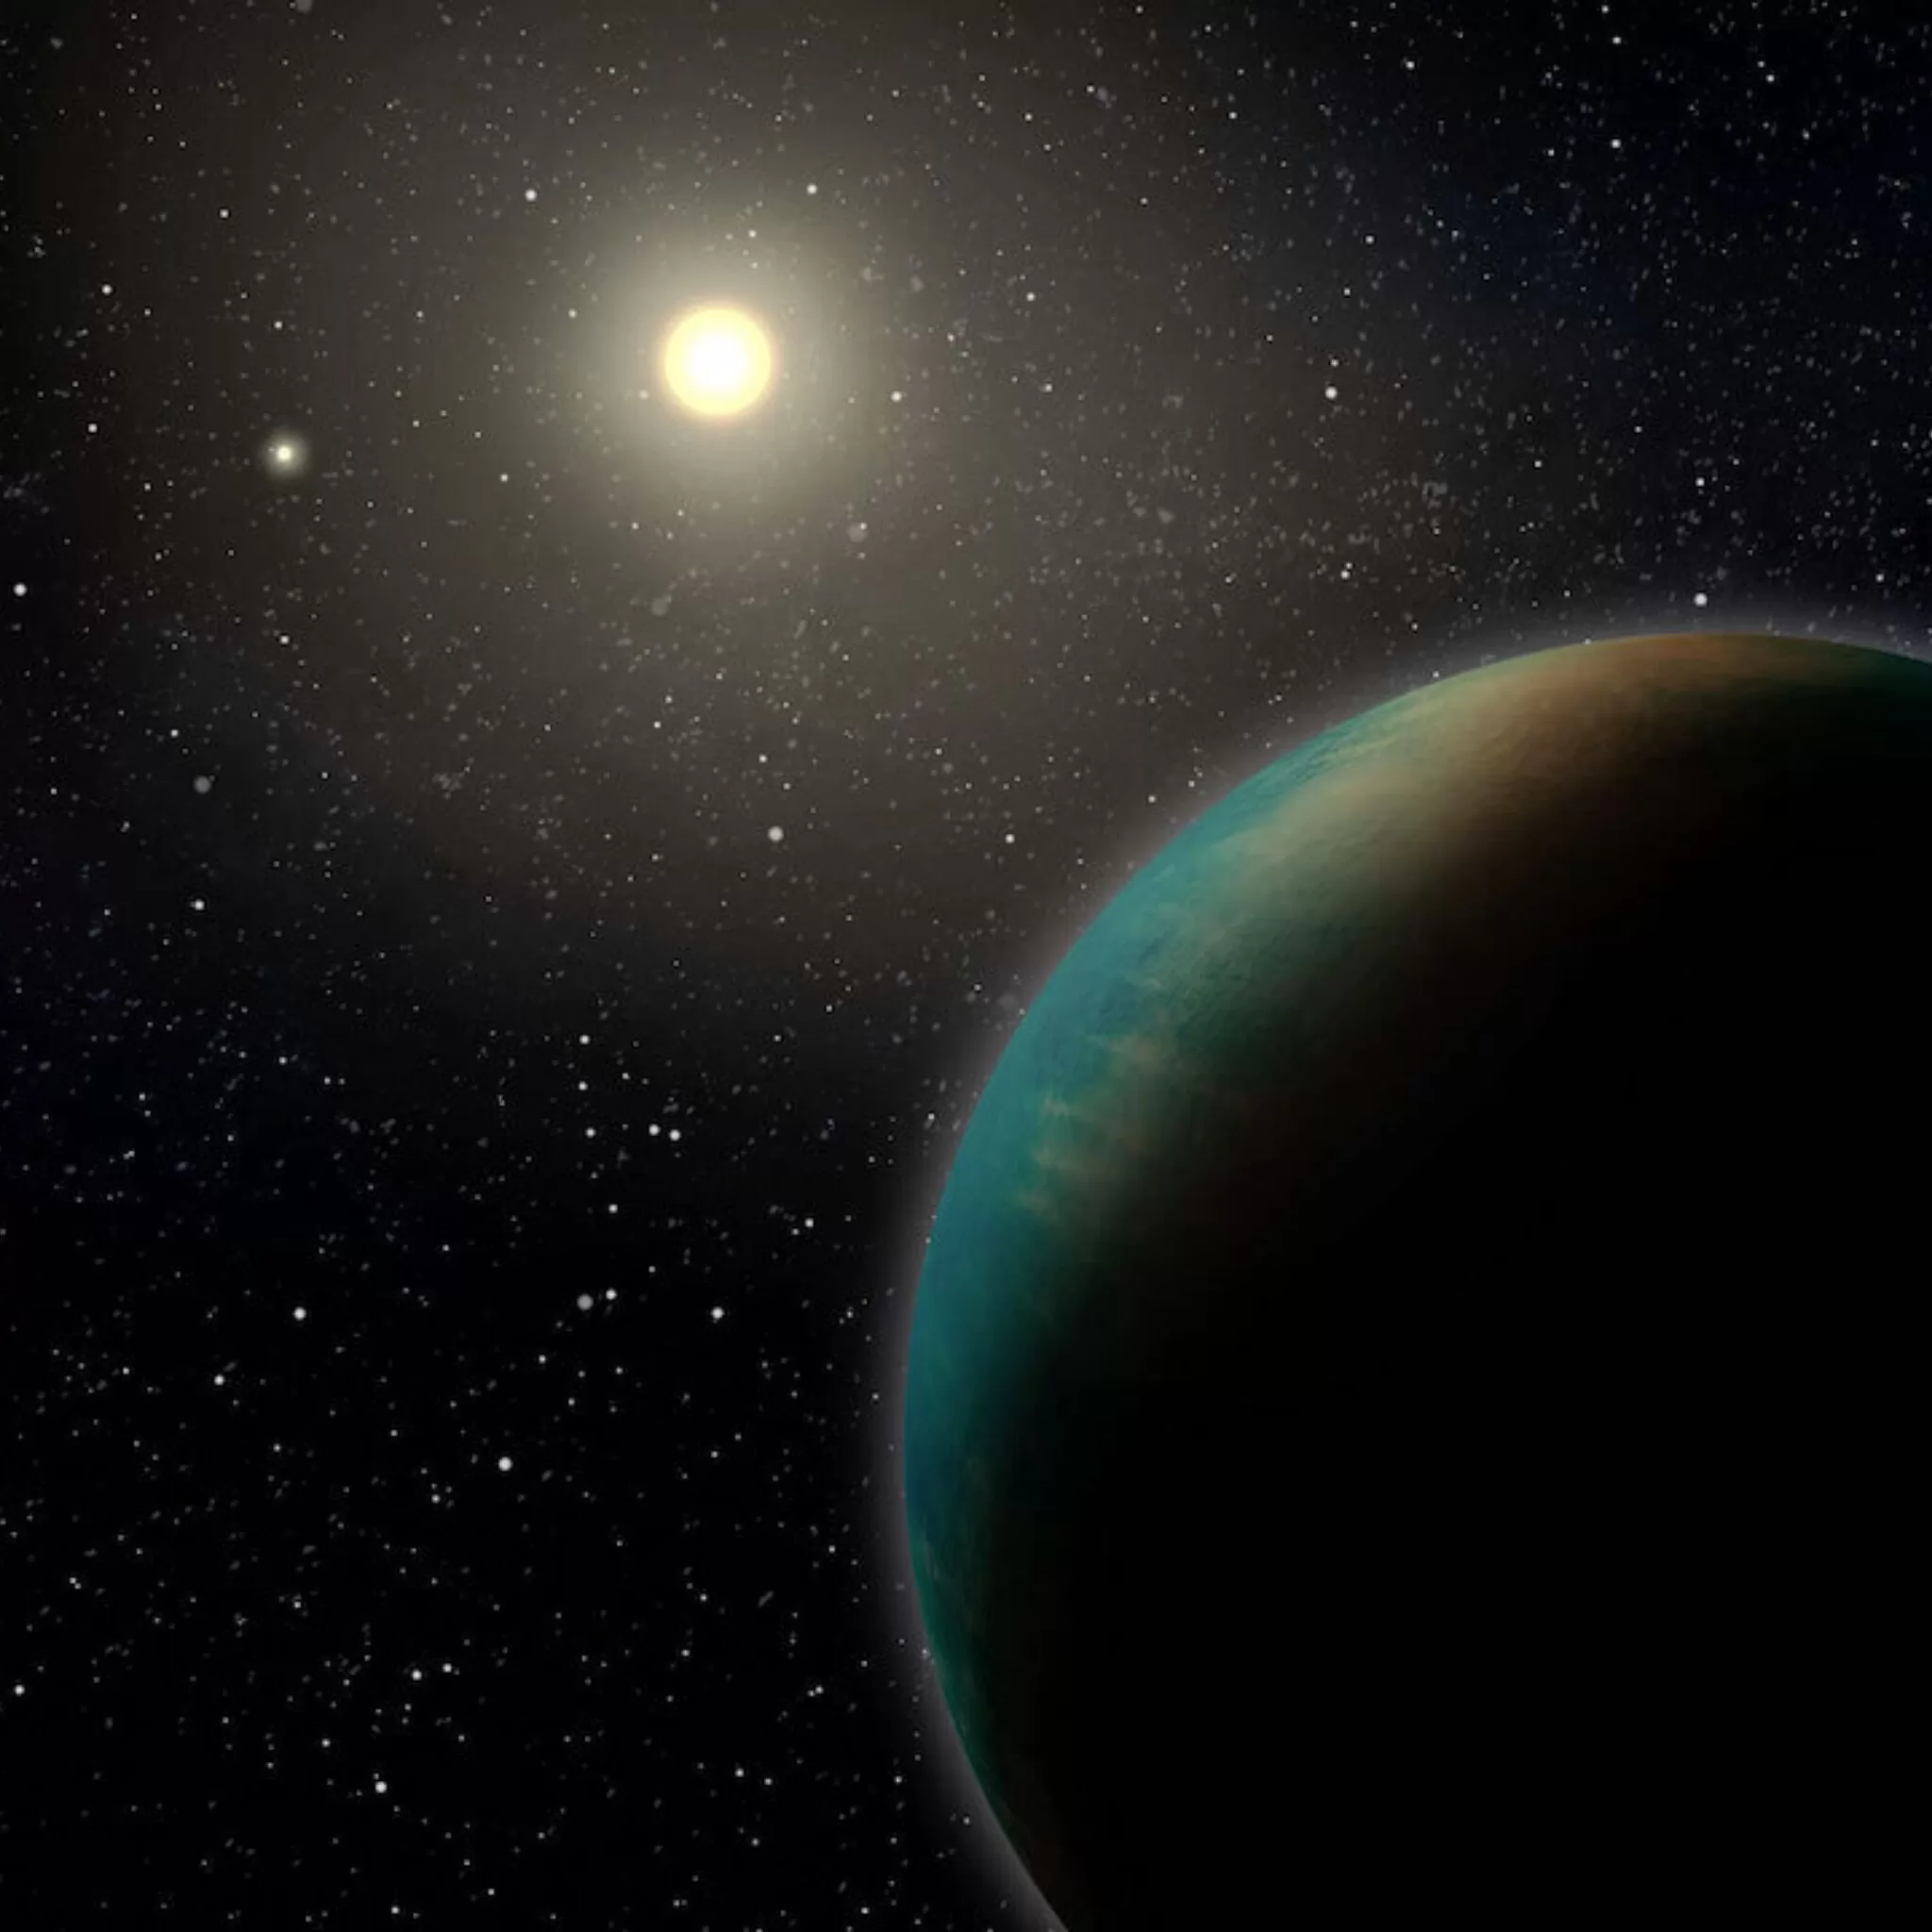 scoperta super terra pianeta TOI-715b